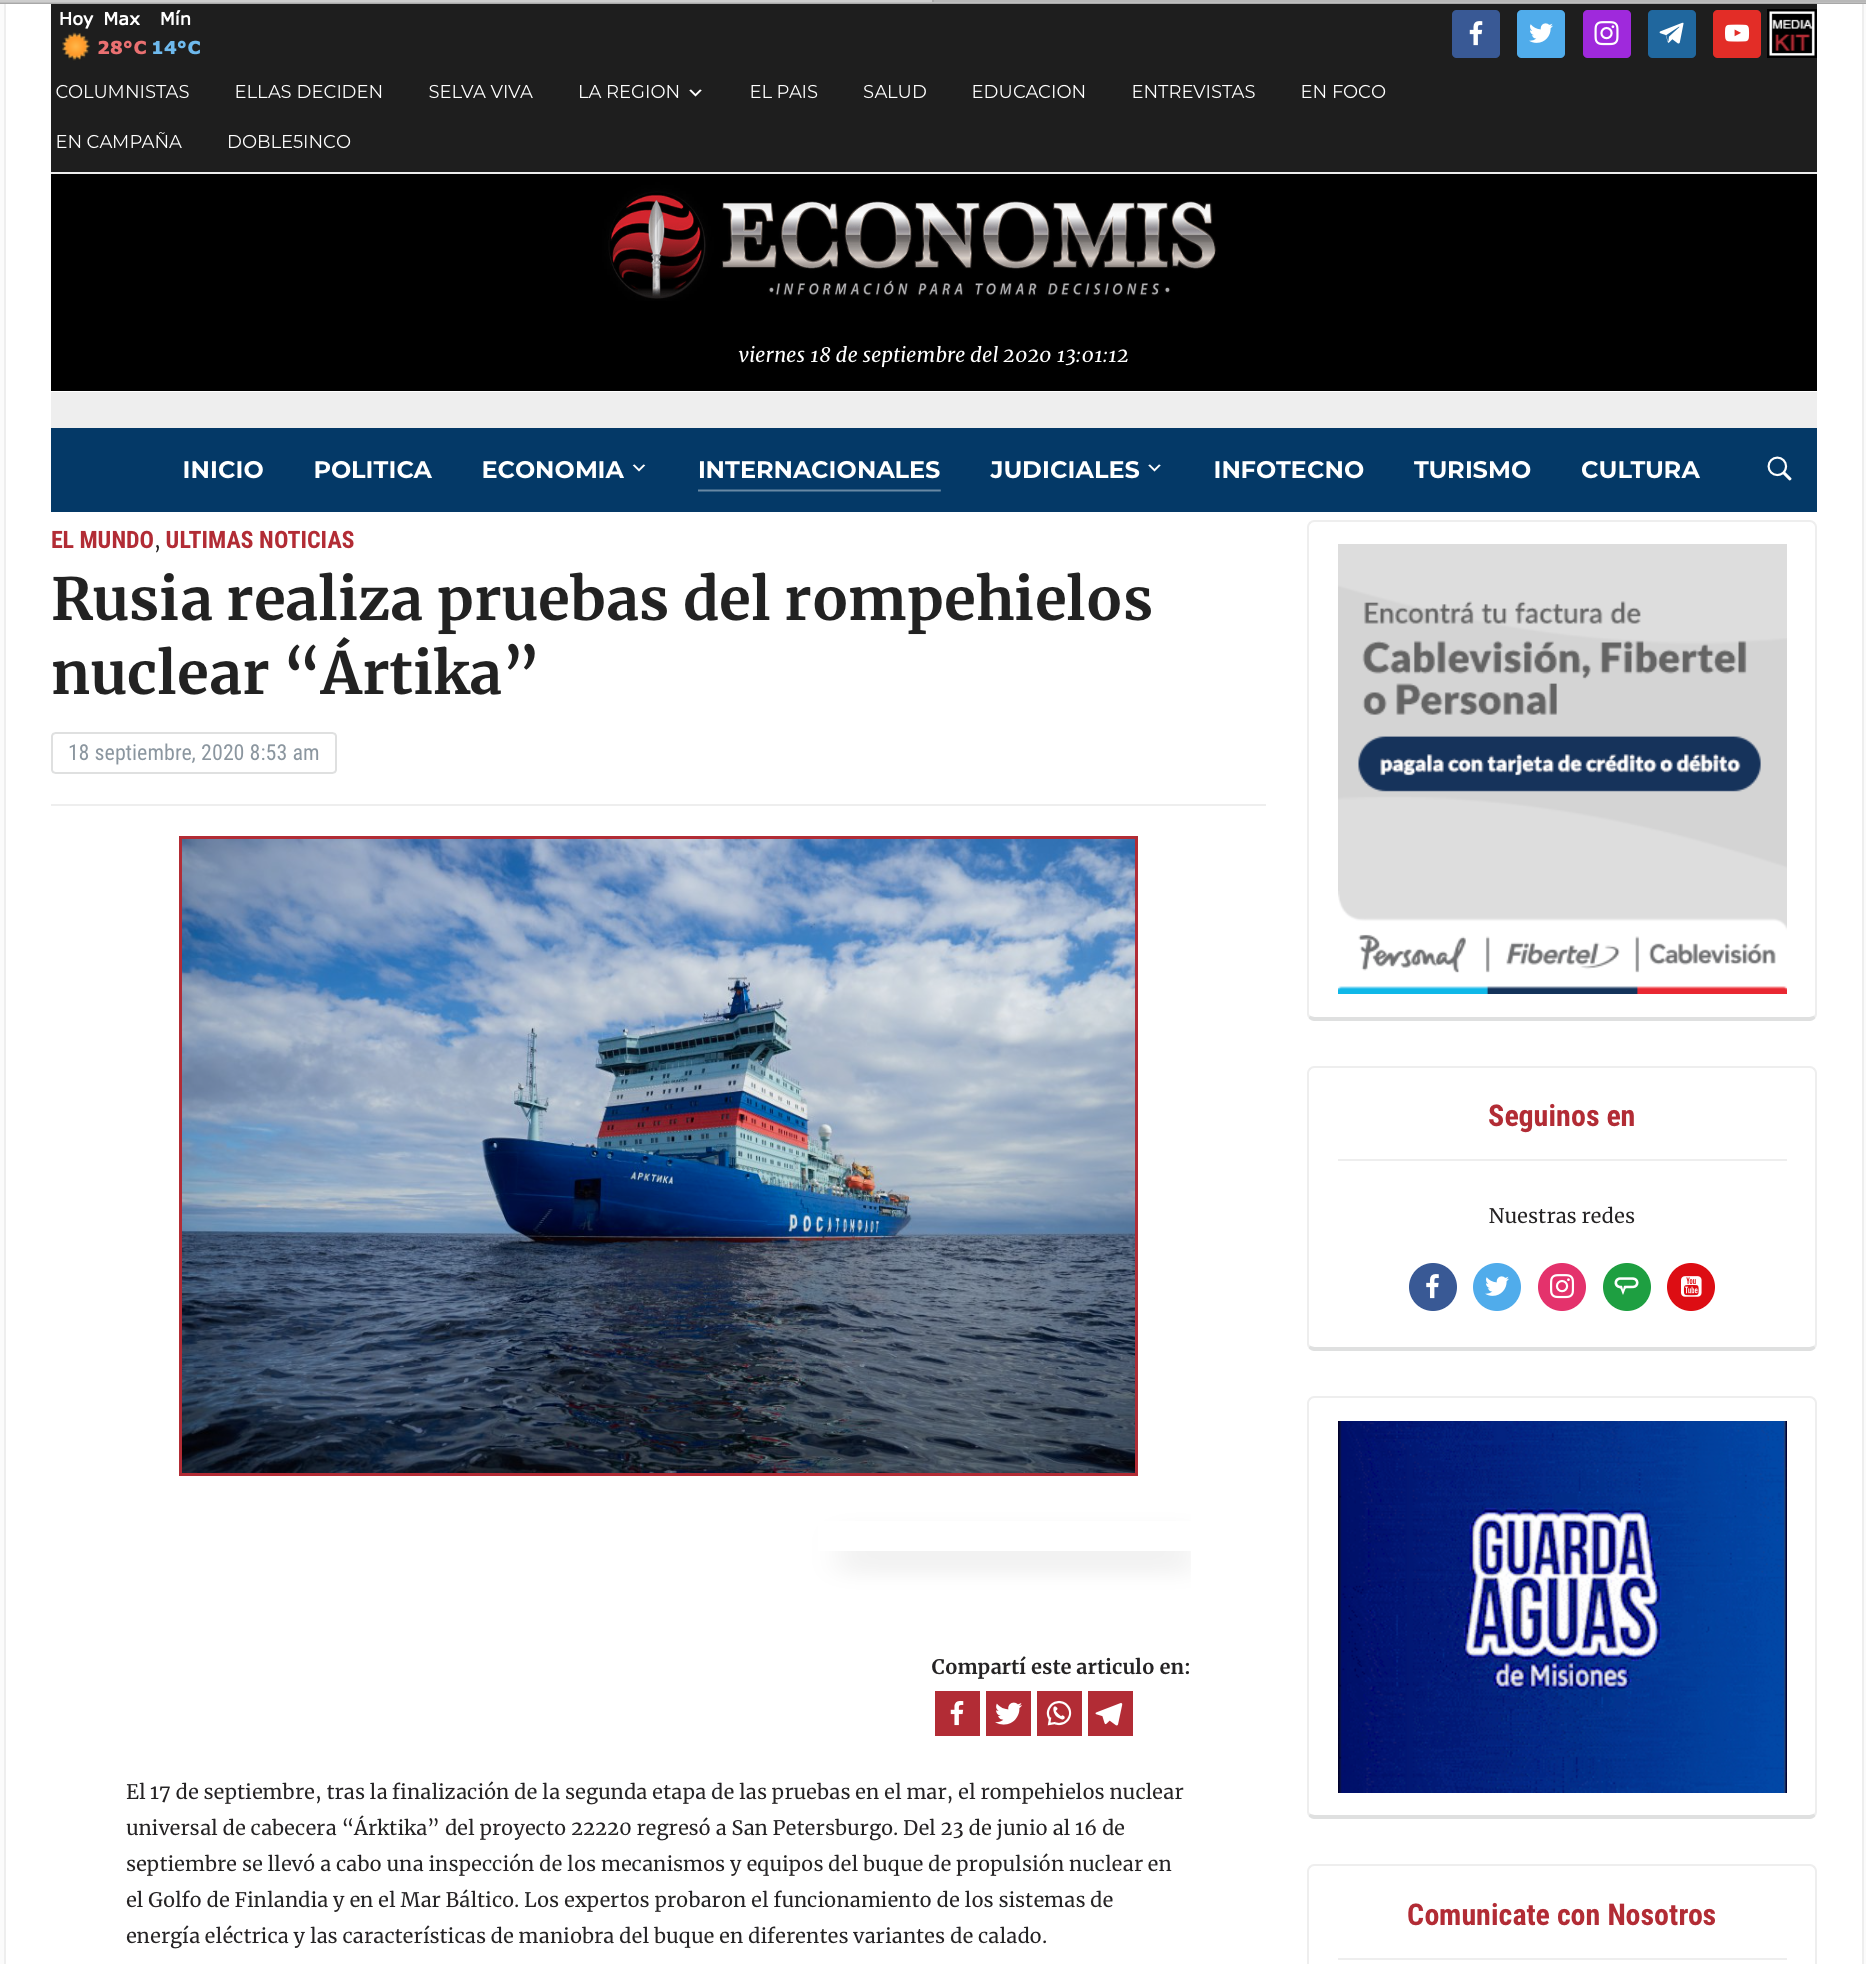 Rusia realiza pruebas del rompehielos nuclear “Árktika” (Economis)